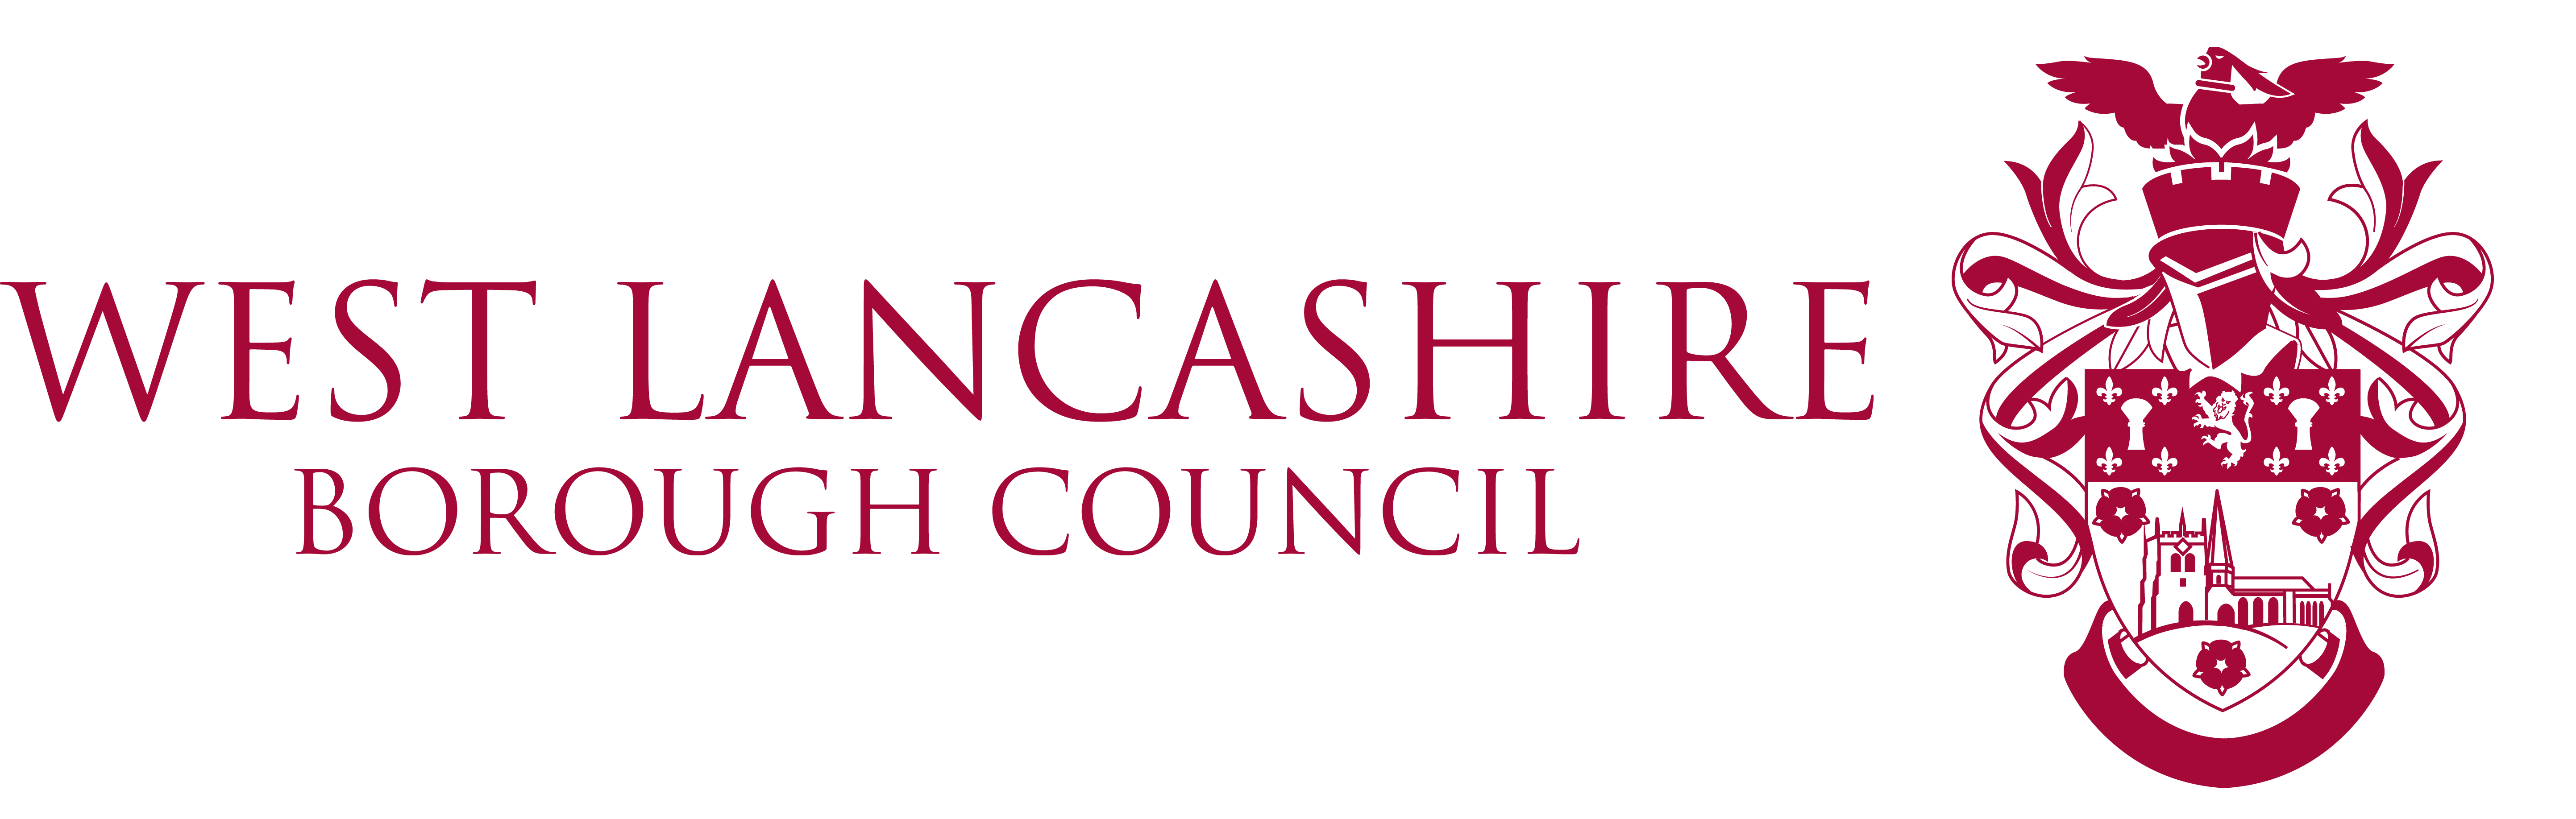 West Lancashire Borough Council Digital Logo 